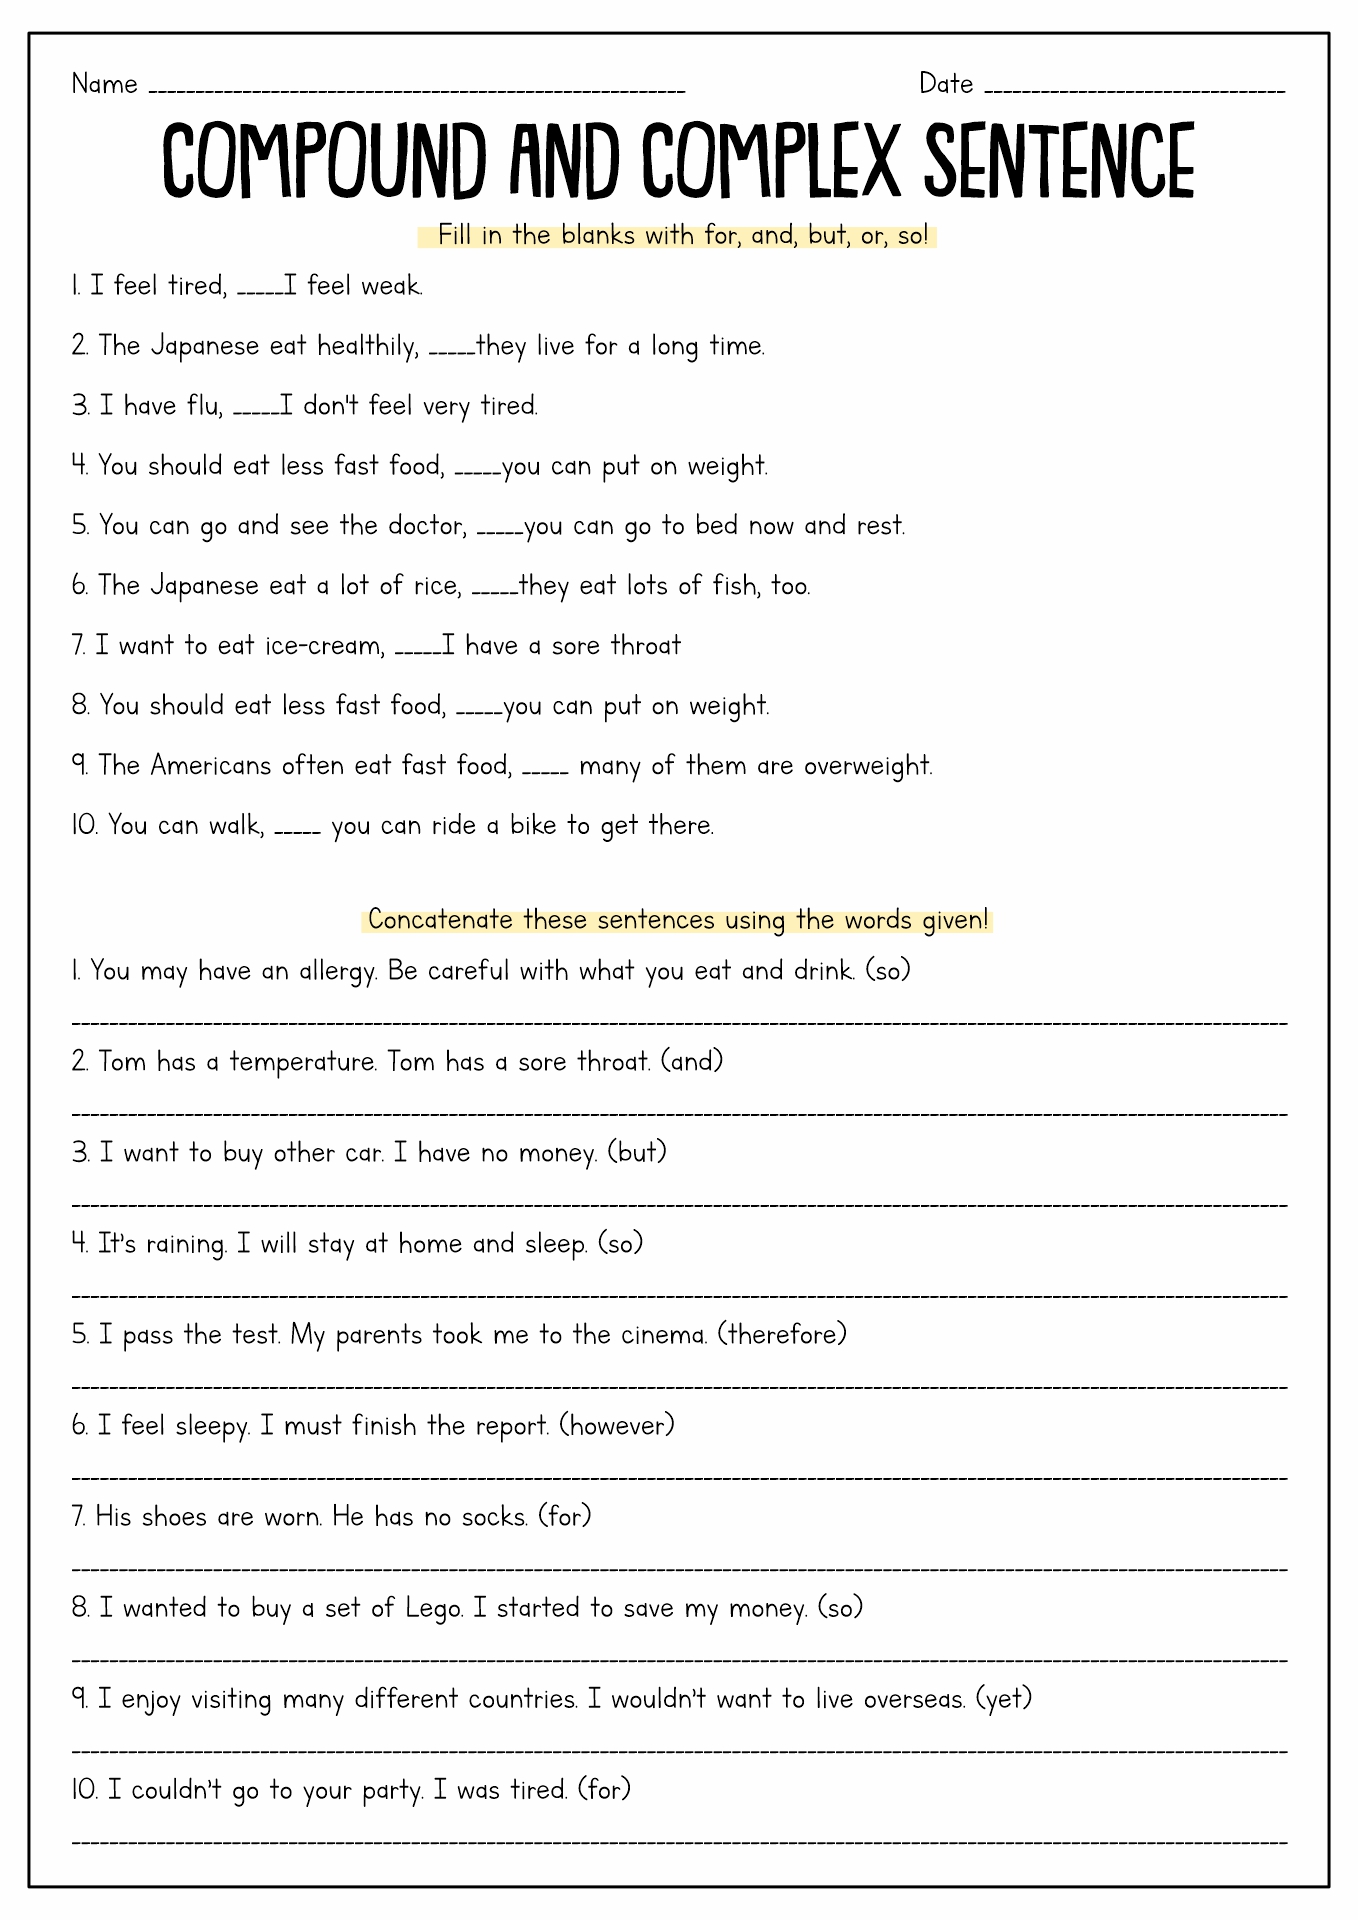 Simple Compound Complex And Compound Complex Sentences Worksheets Pdf